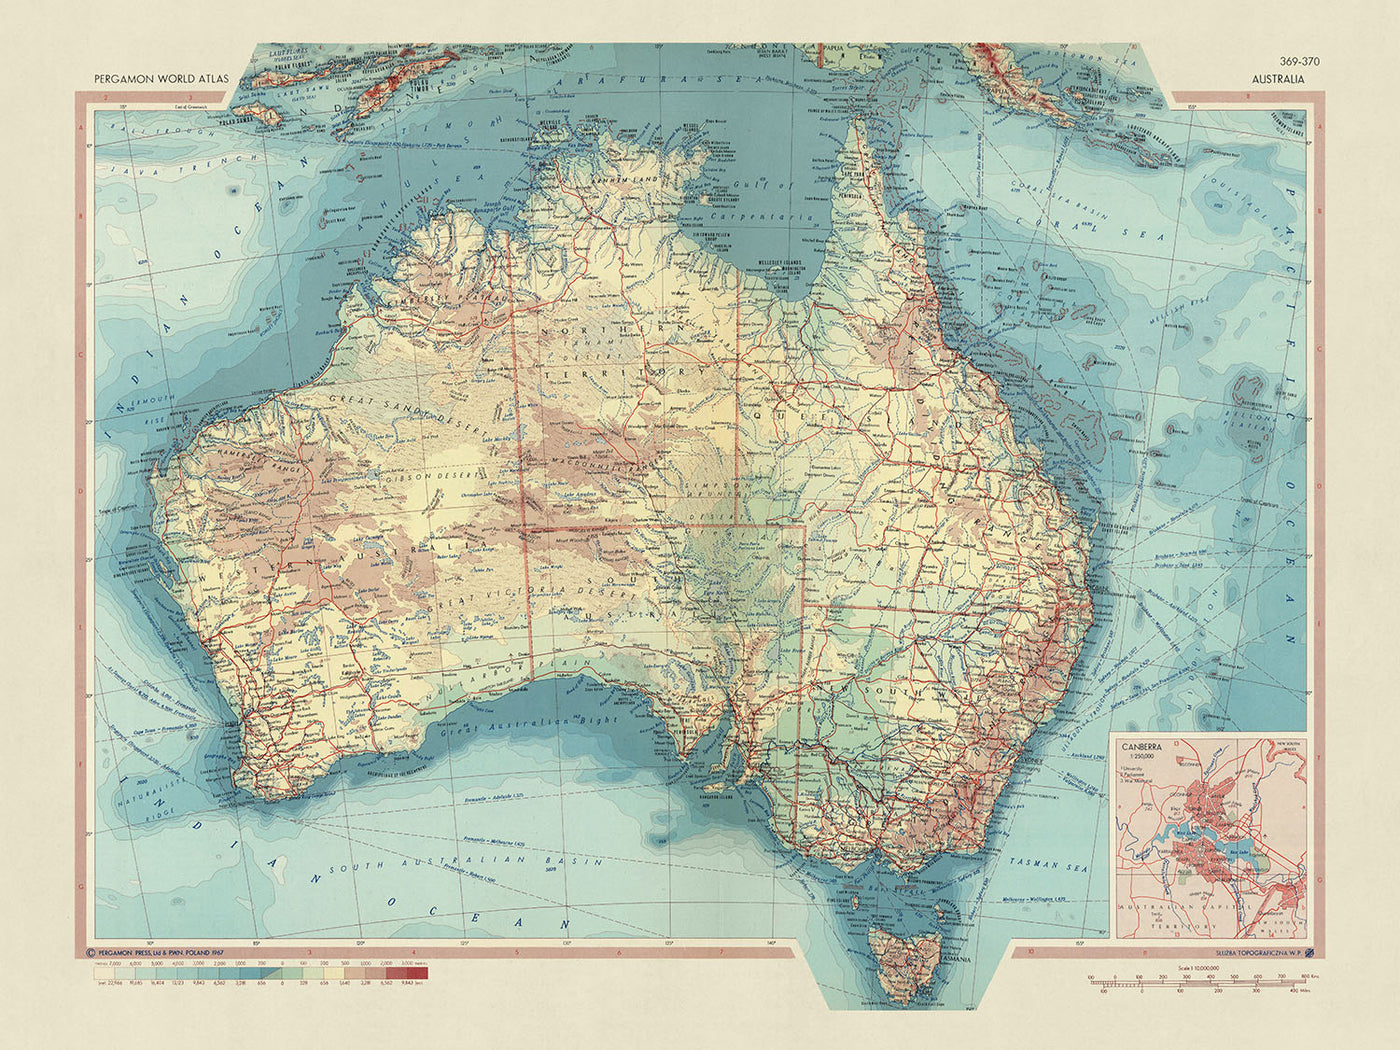 Ancienne carte de l'Australie réalisée par le service topographique de l'armée polonaise, 1967 : frontières politiques détaillées, topographie physique variée, paysages naturels diversifiés, savoir-faire méticuleux, représentation géographique complète